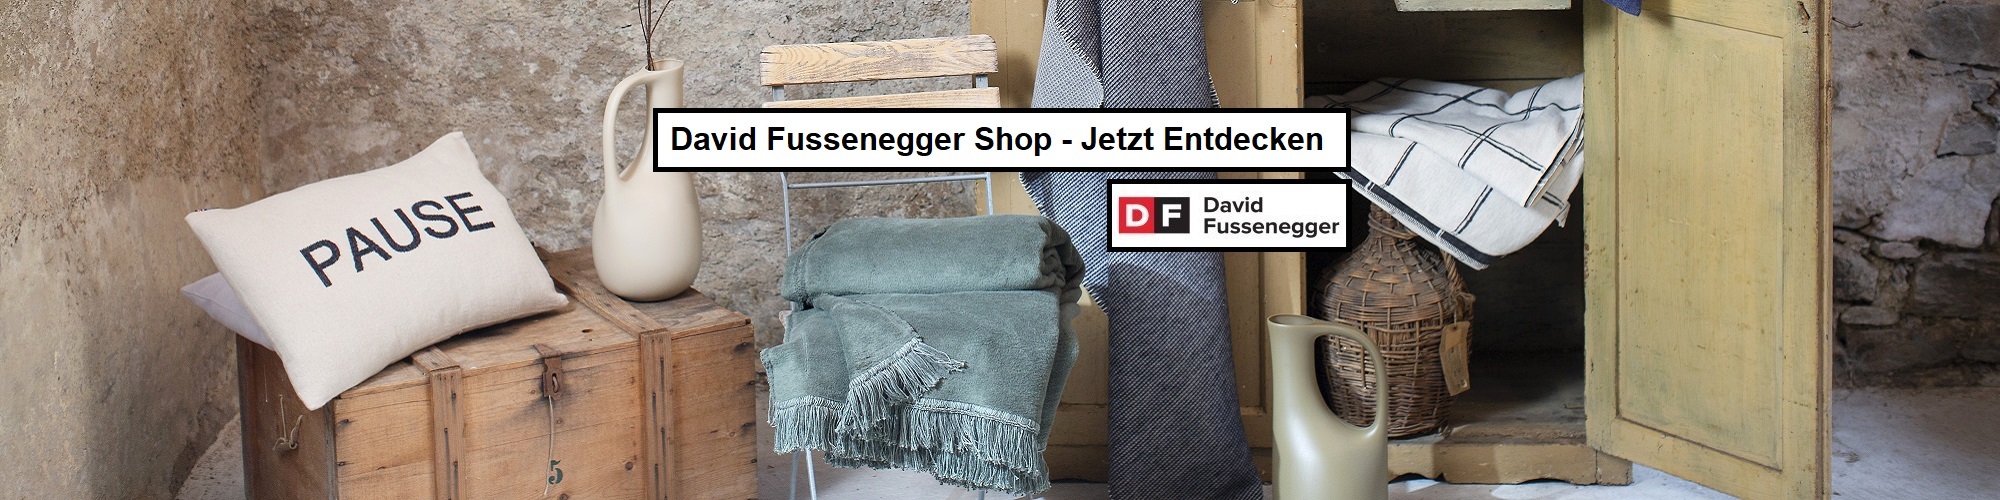 David Fussenegger Shop